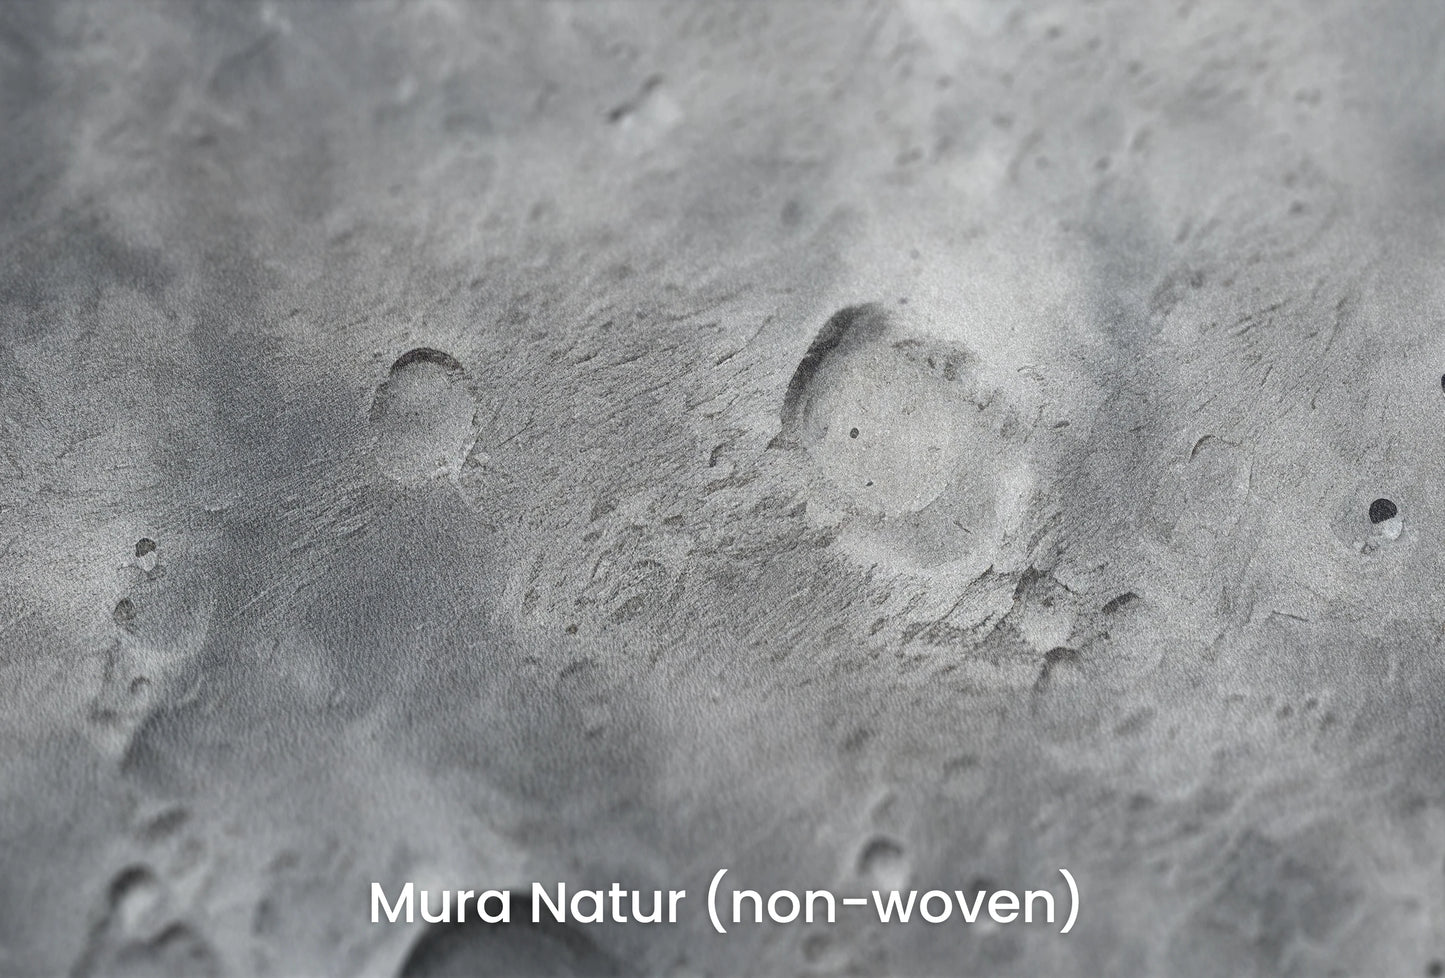 Zbliżenie na artystyczną fototapetę o nazwie Lunar Landscape #2 na podłożu Mura Natur (non-woven) - naturalne i ekologiczne podłoże.